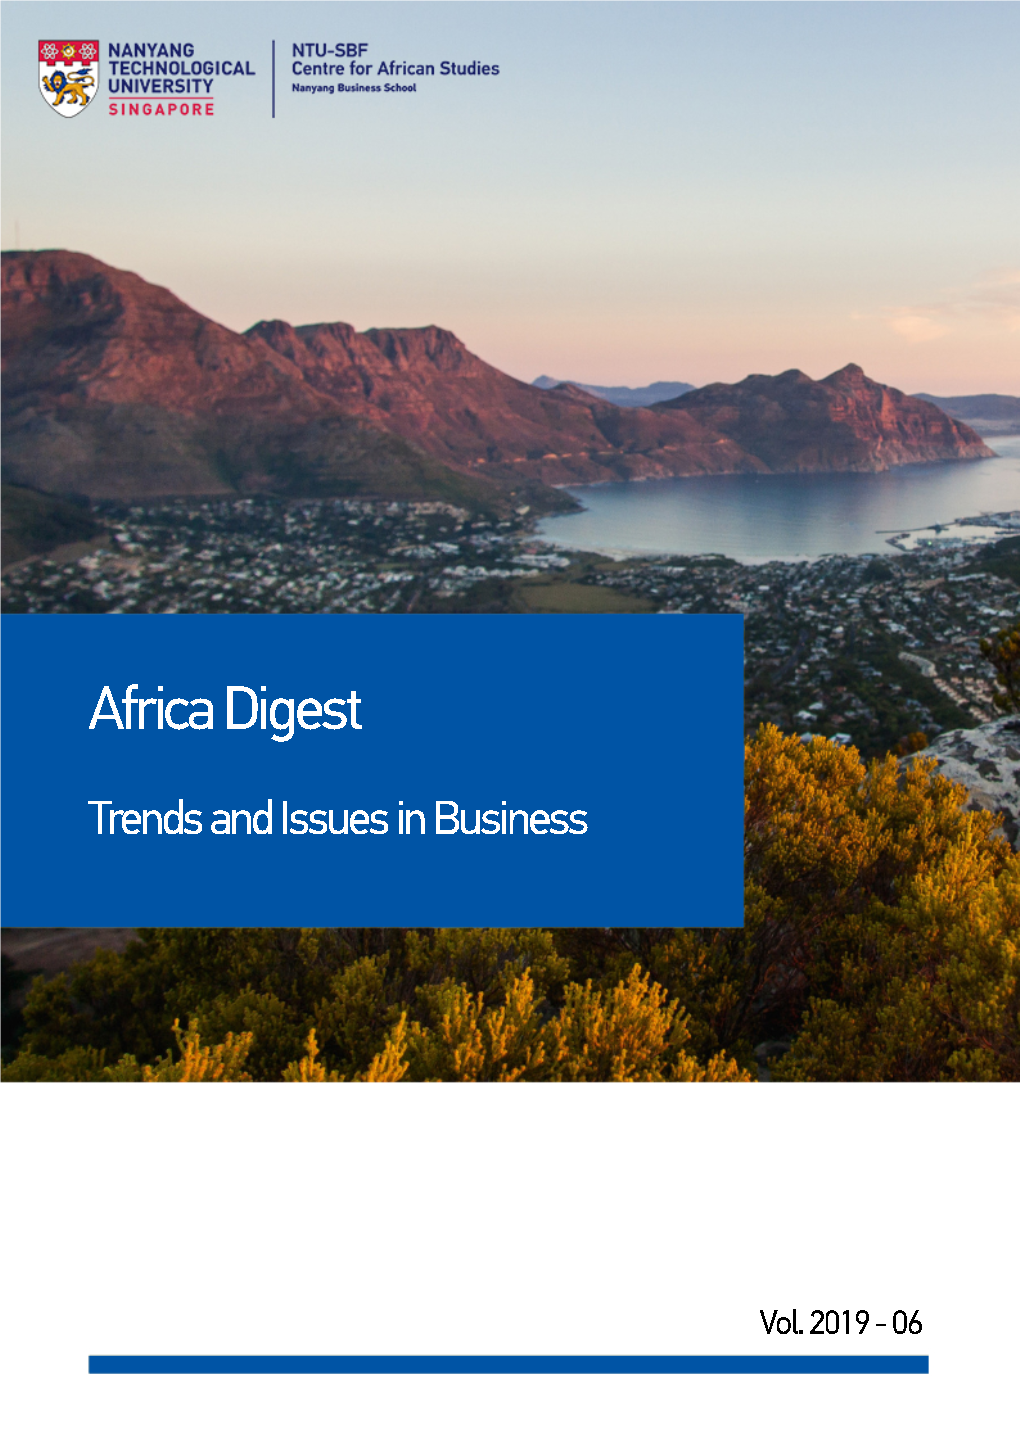 Africa Digest Vol. 2019-06